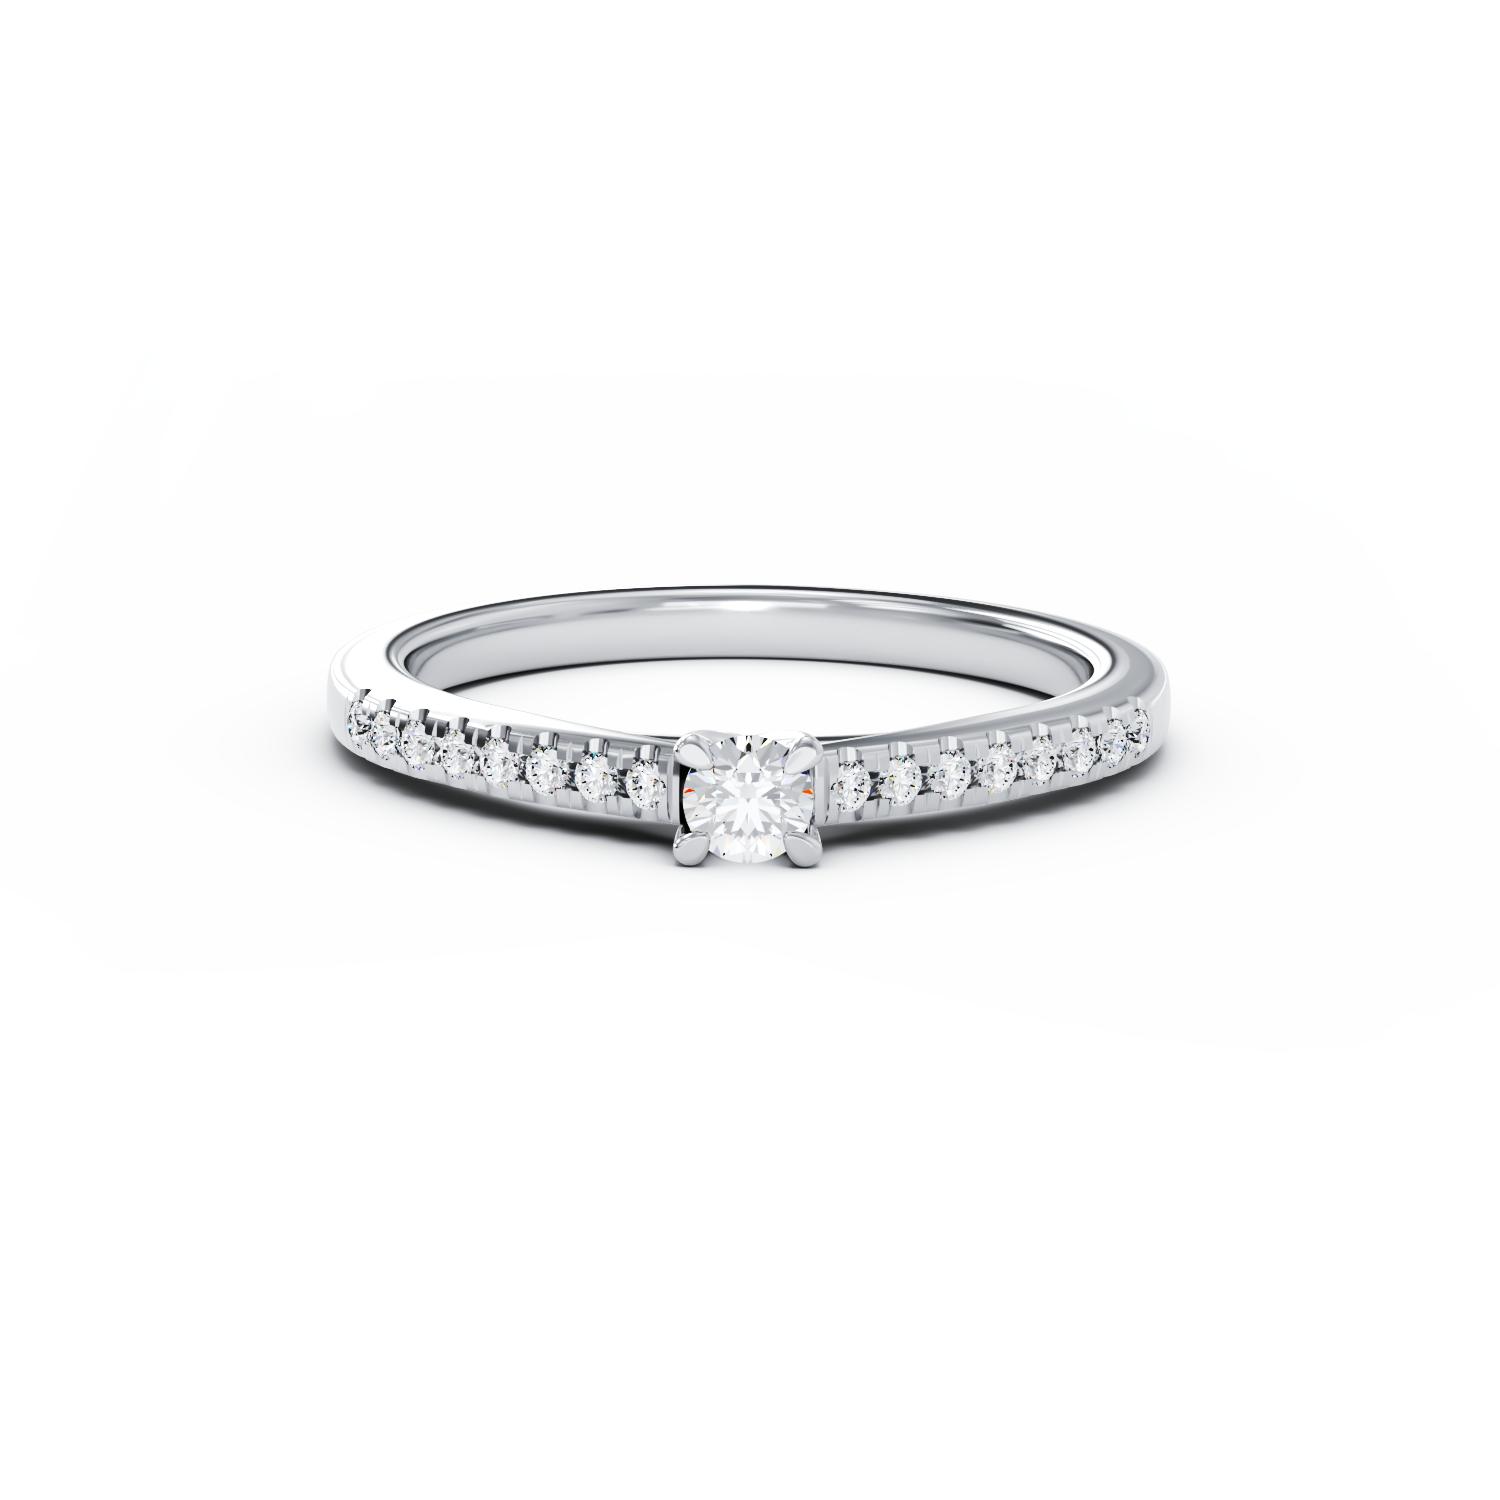 Eljegyzési gyűrű 18K-os fehér aranyból 0,104ct gyémánttal és 0,15ct gyémánttal. Gramm: 2,05